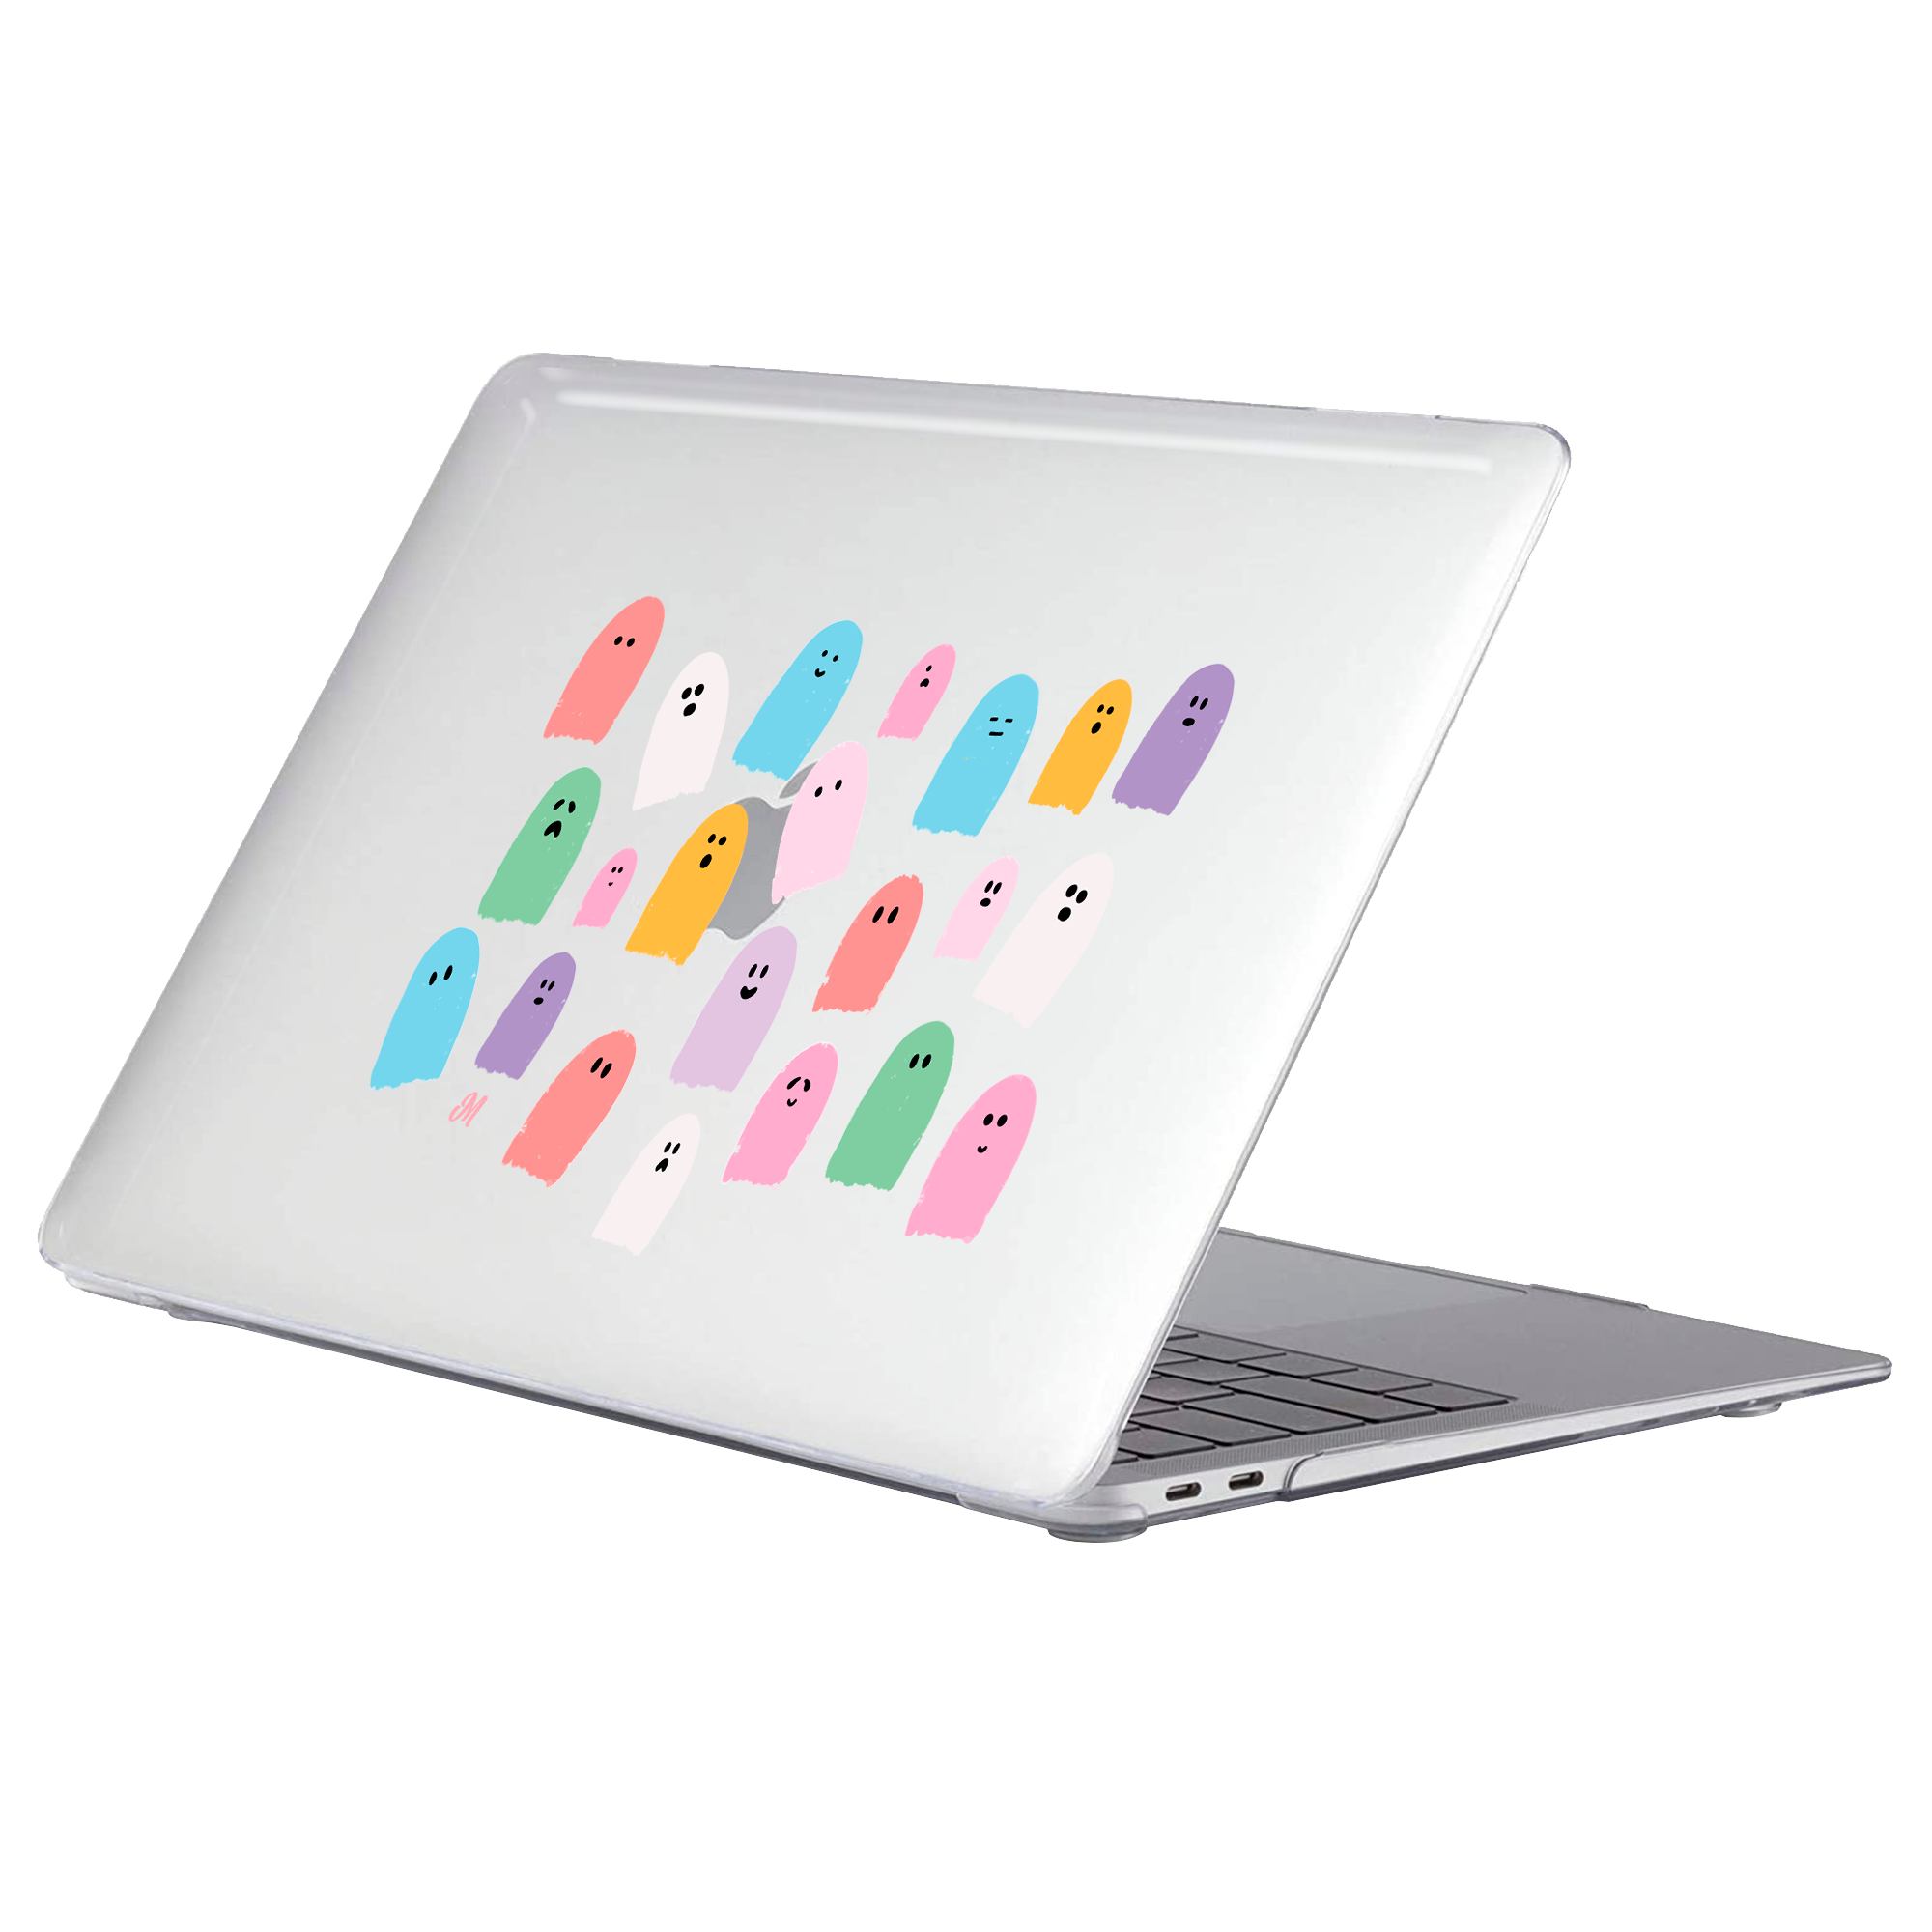 Fantasmitas Encantados MacBook Case - Mandala Cases